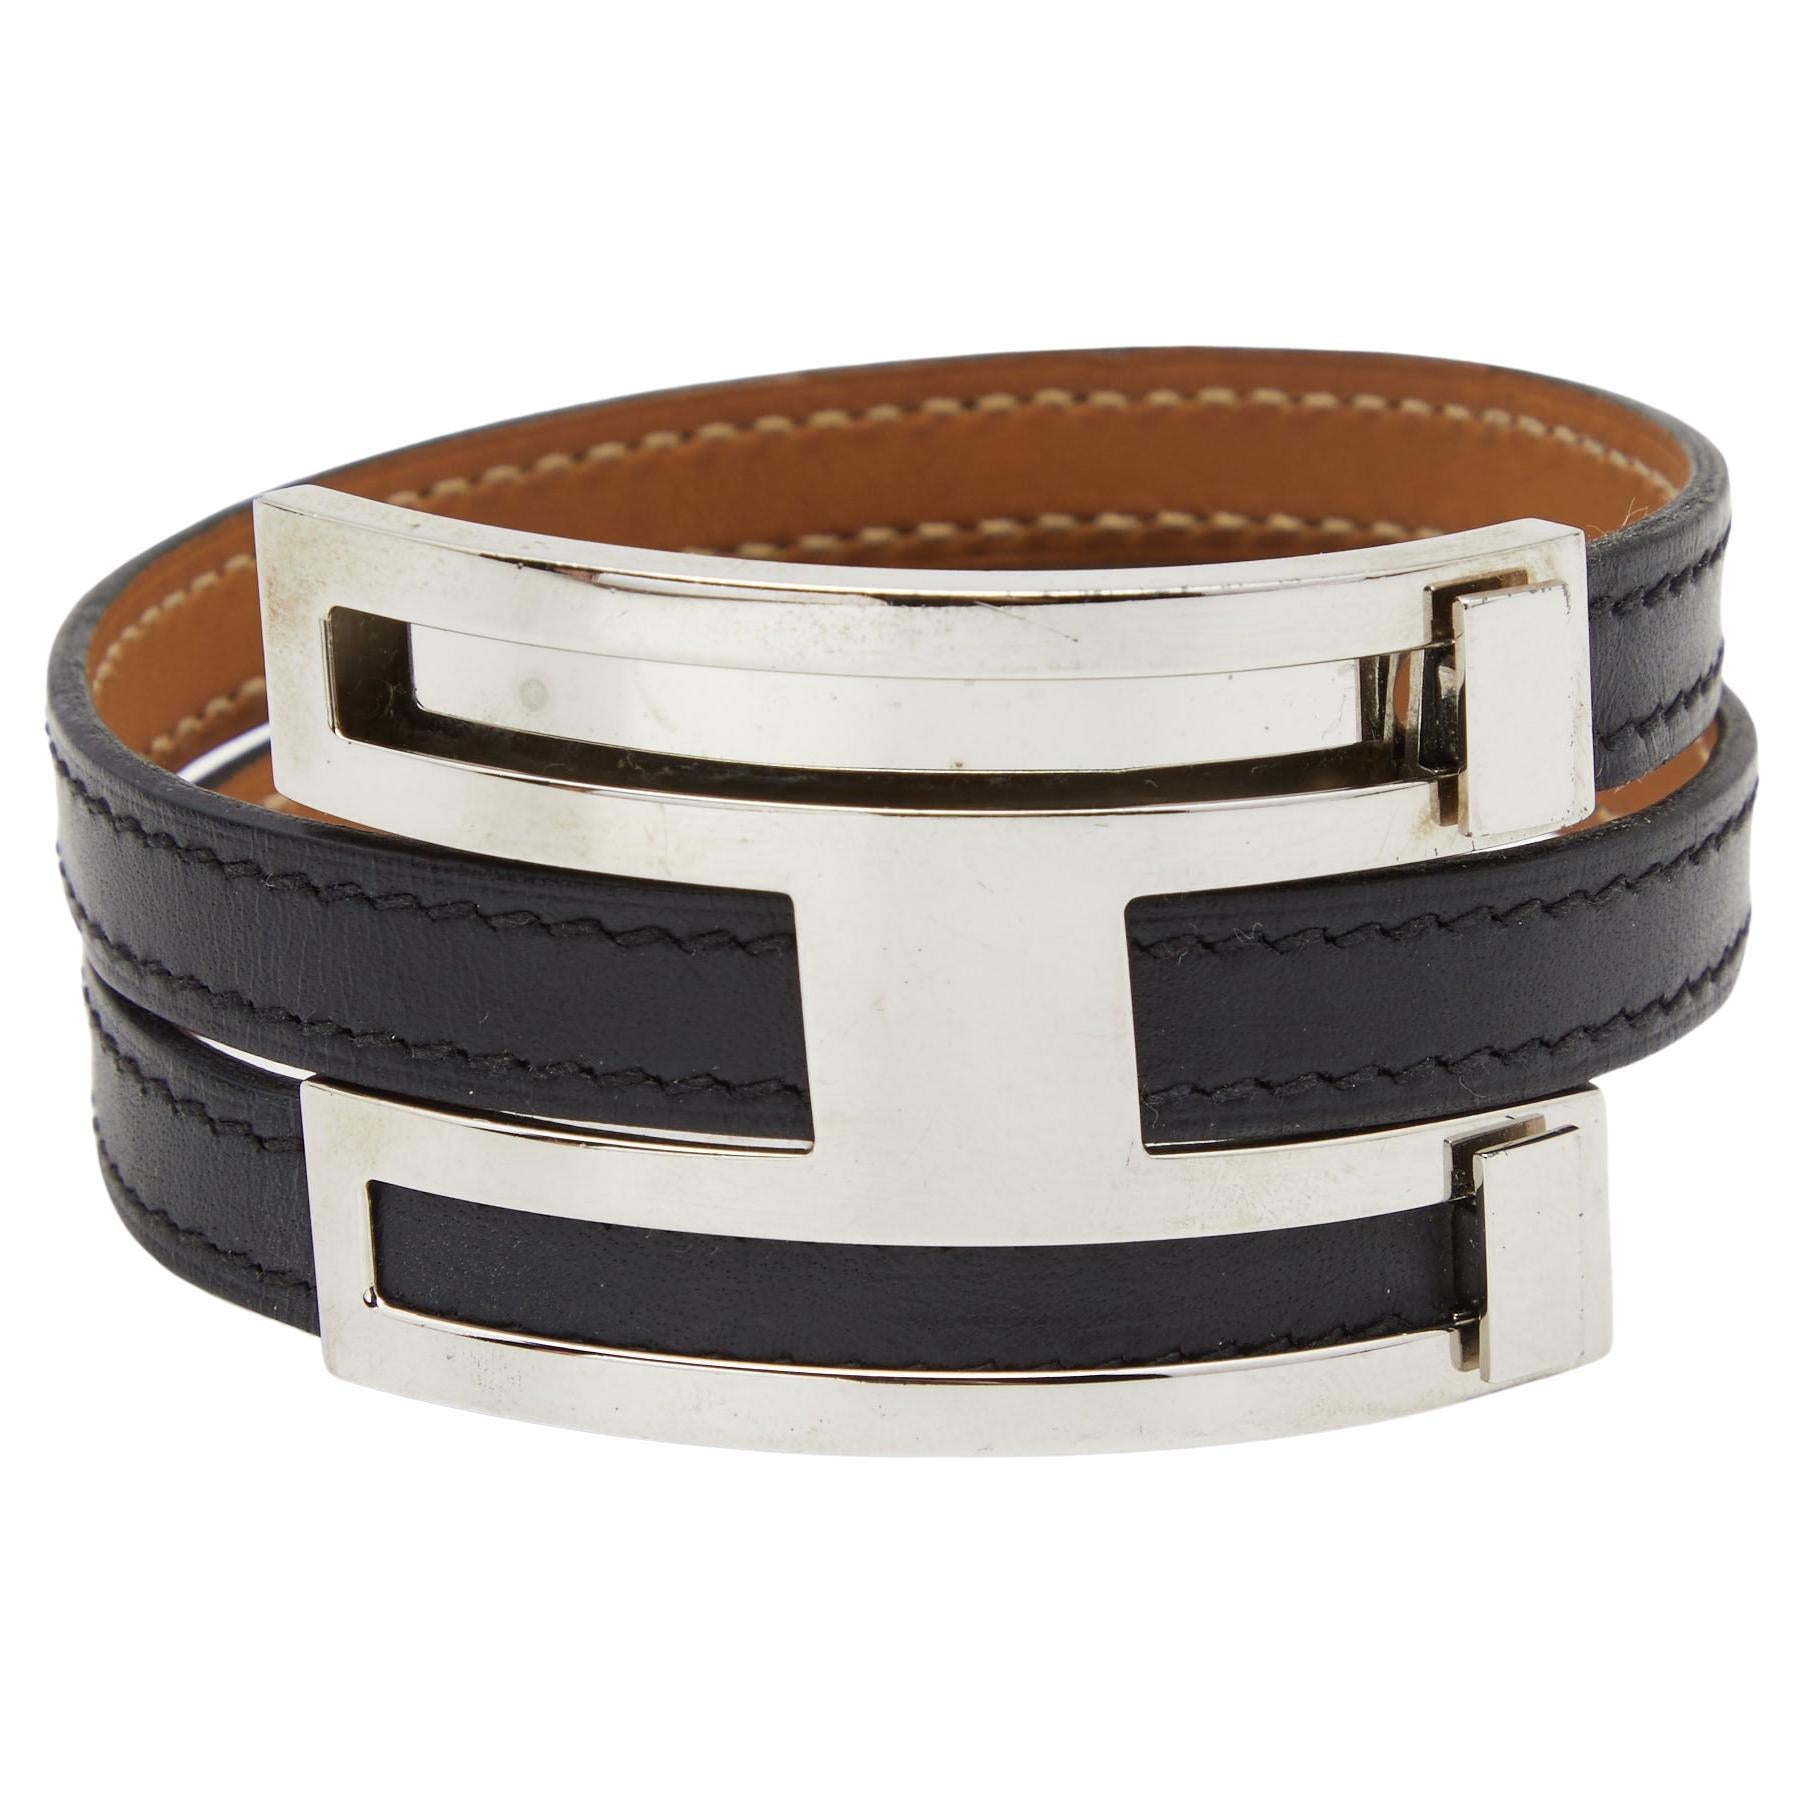 Hermes Pousse Pousse Black Leather Palladium Plated Adjustable H Bracelet